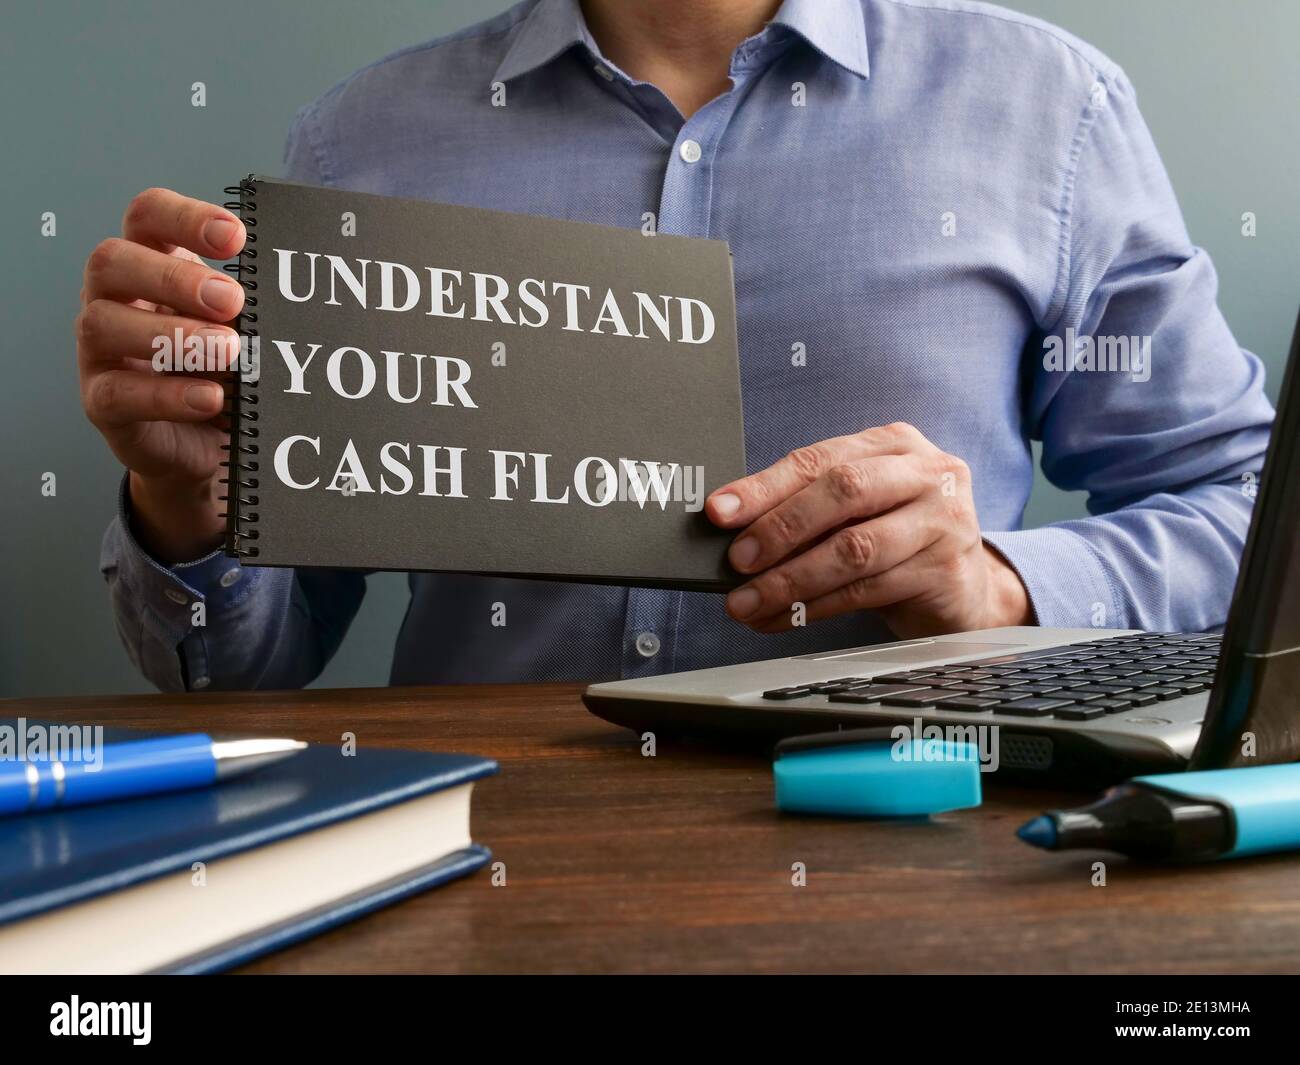 Mann zeigt verstehen Sie Ihre Cash-Flow-Zeichen auf der Seite. Stockfoto